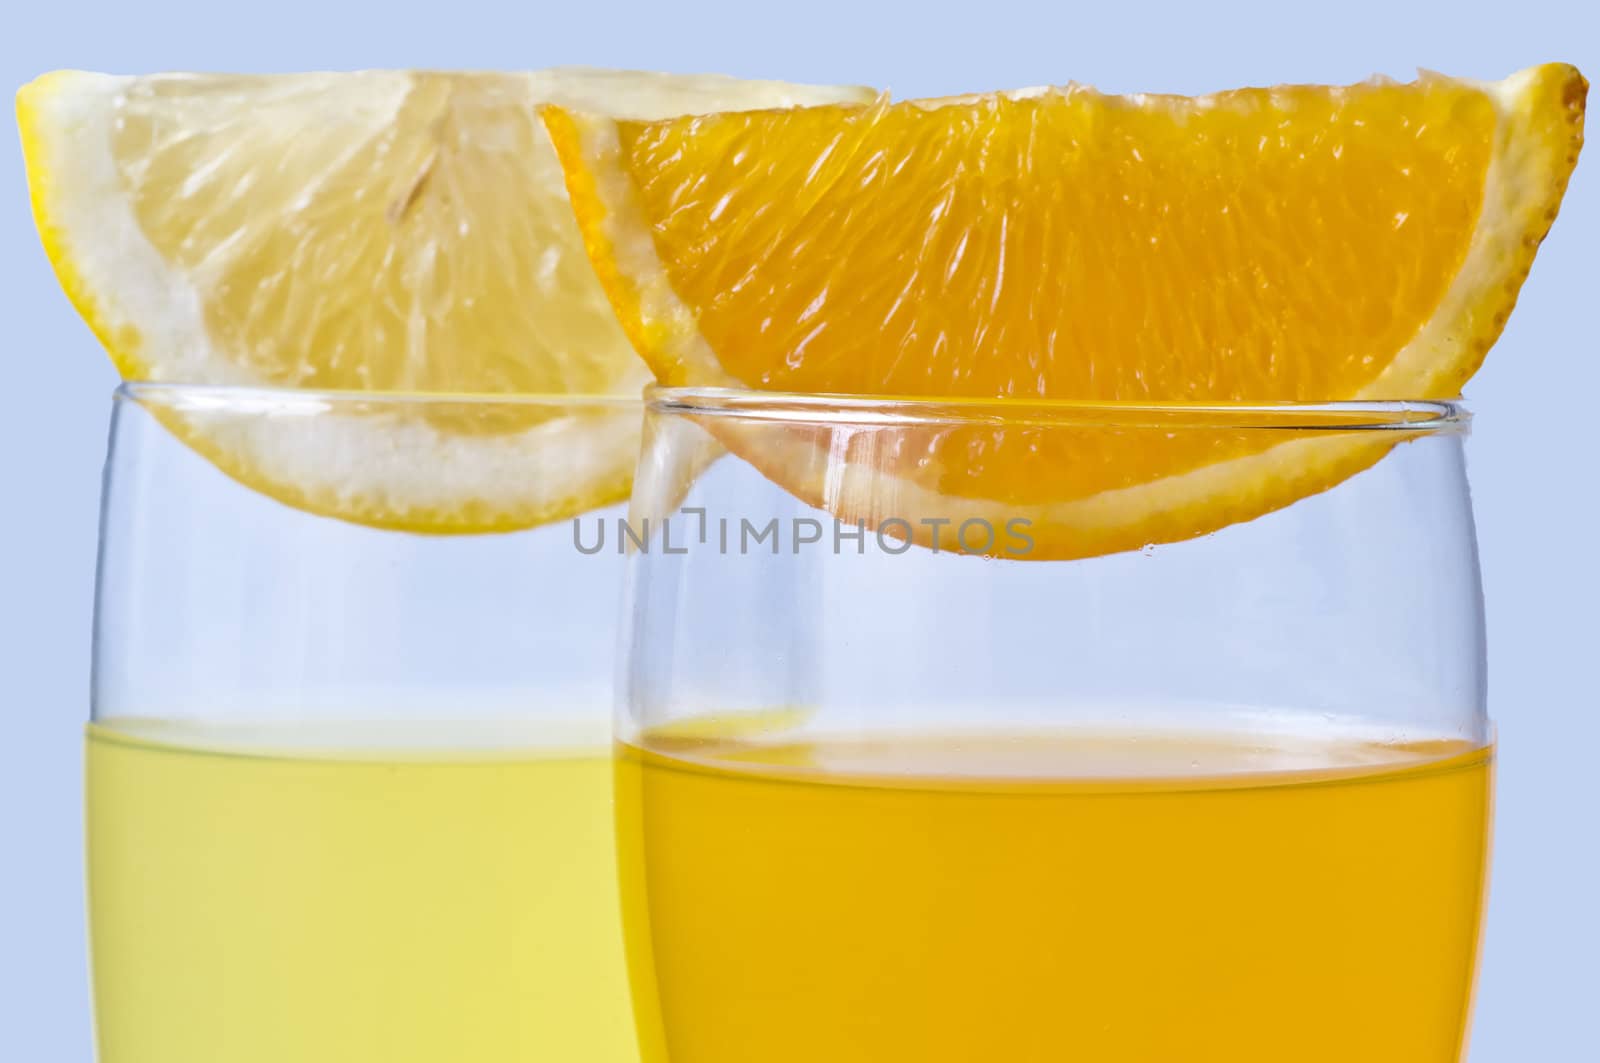 orange juice and lemon juice by Jochen